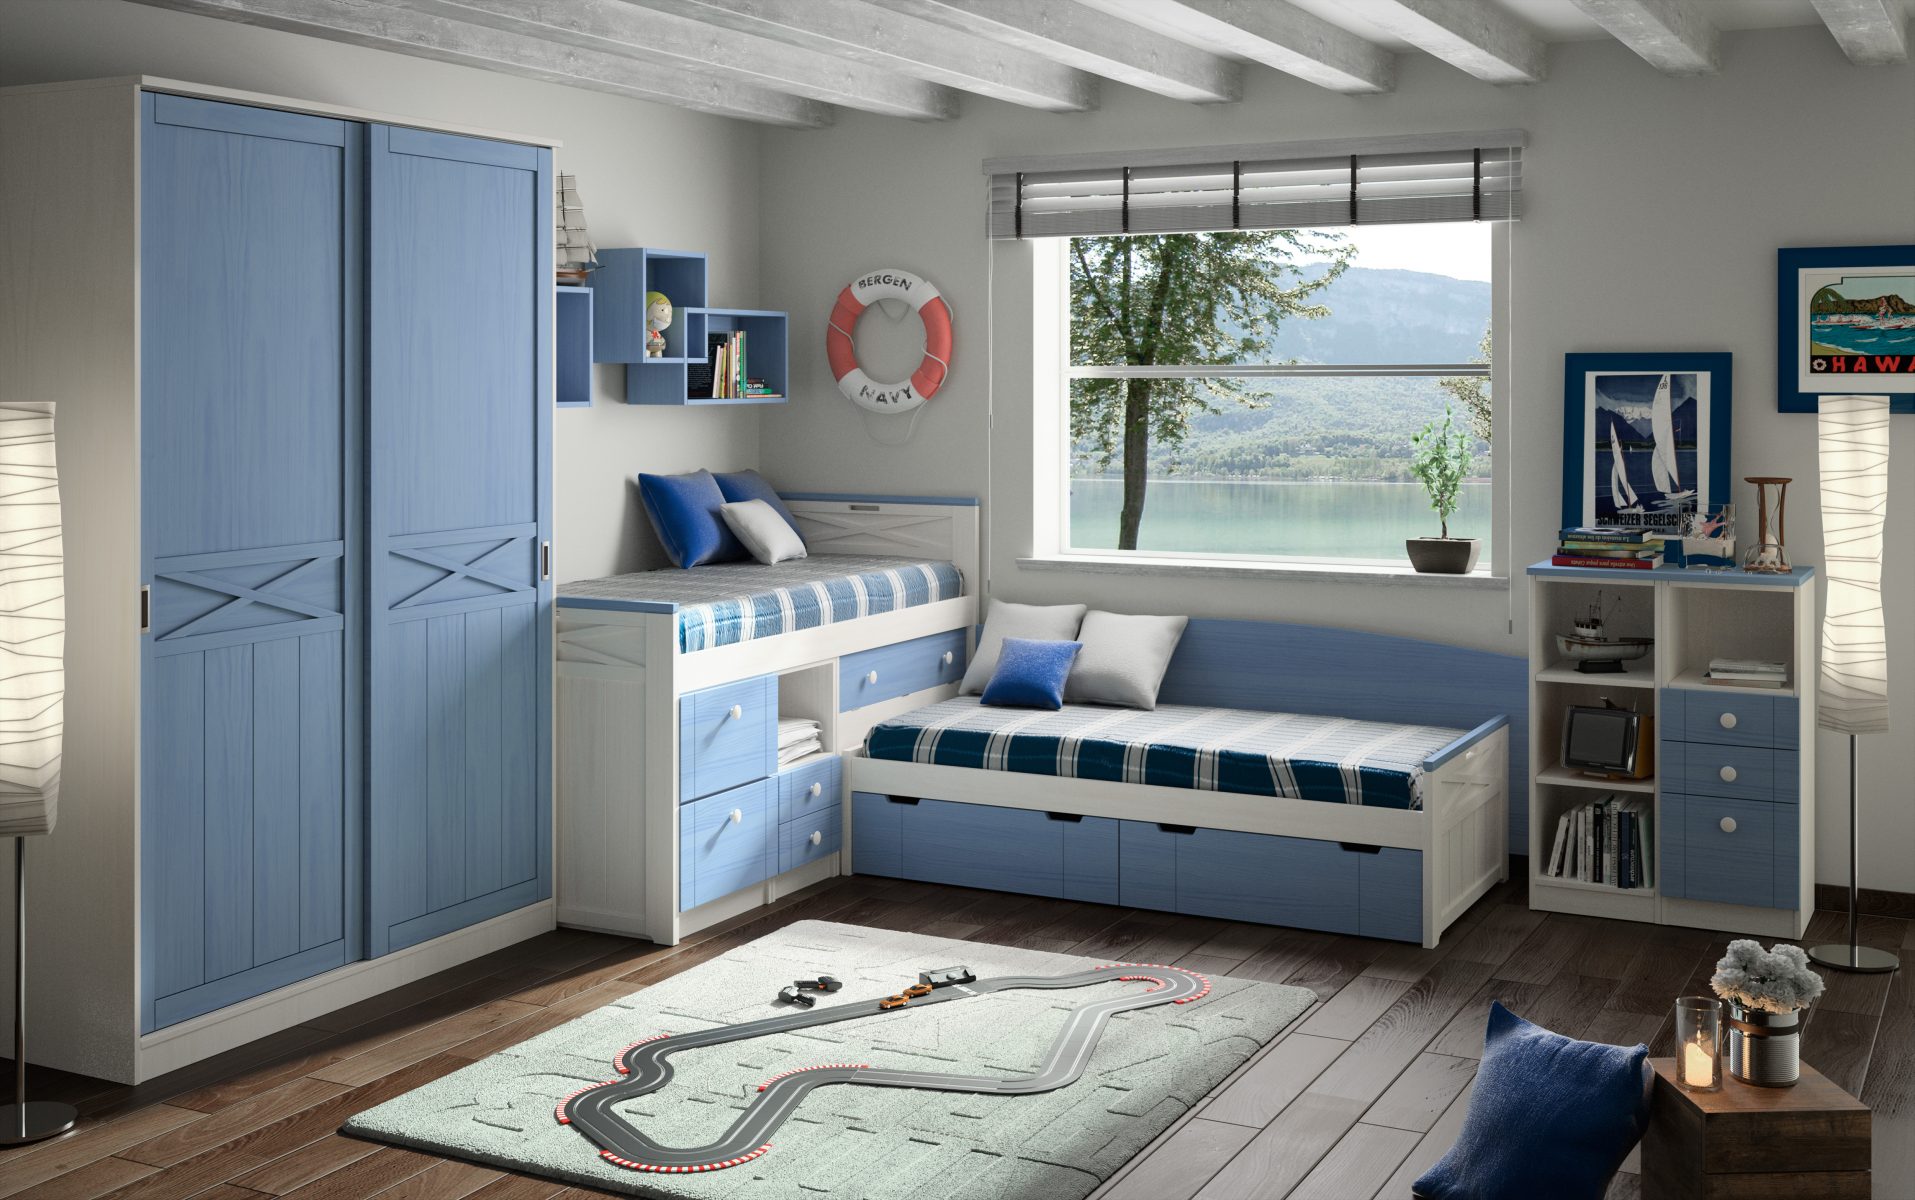 Dormitorio para niños estilo marinero en Valladolid Muebles Valsero 